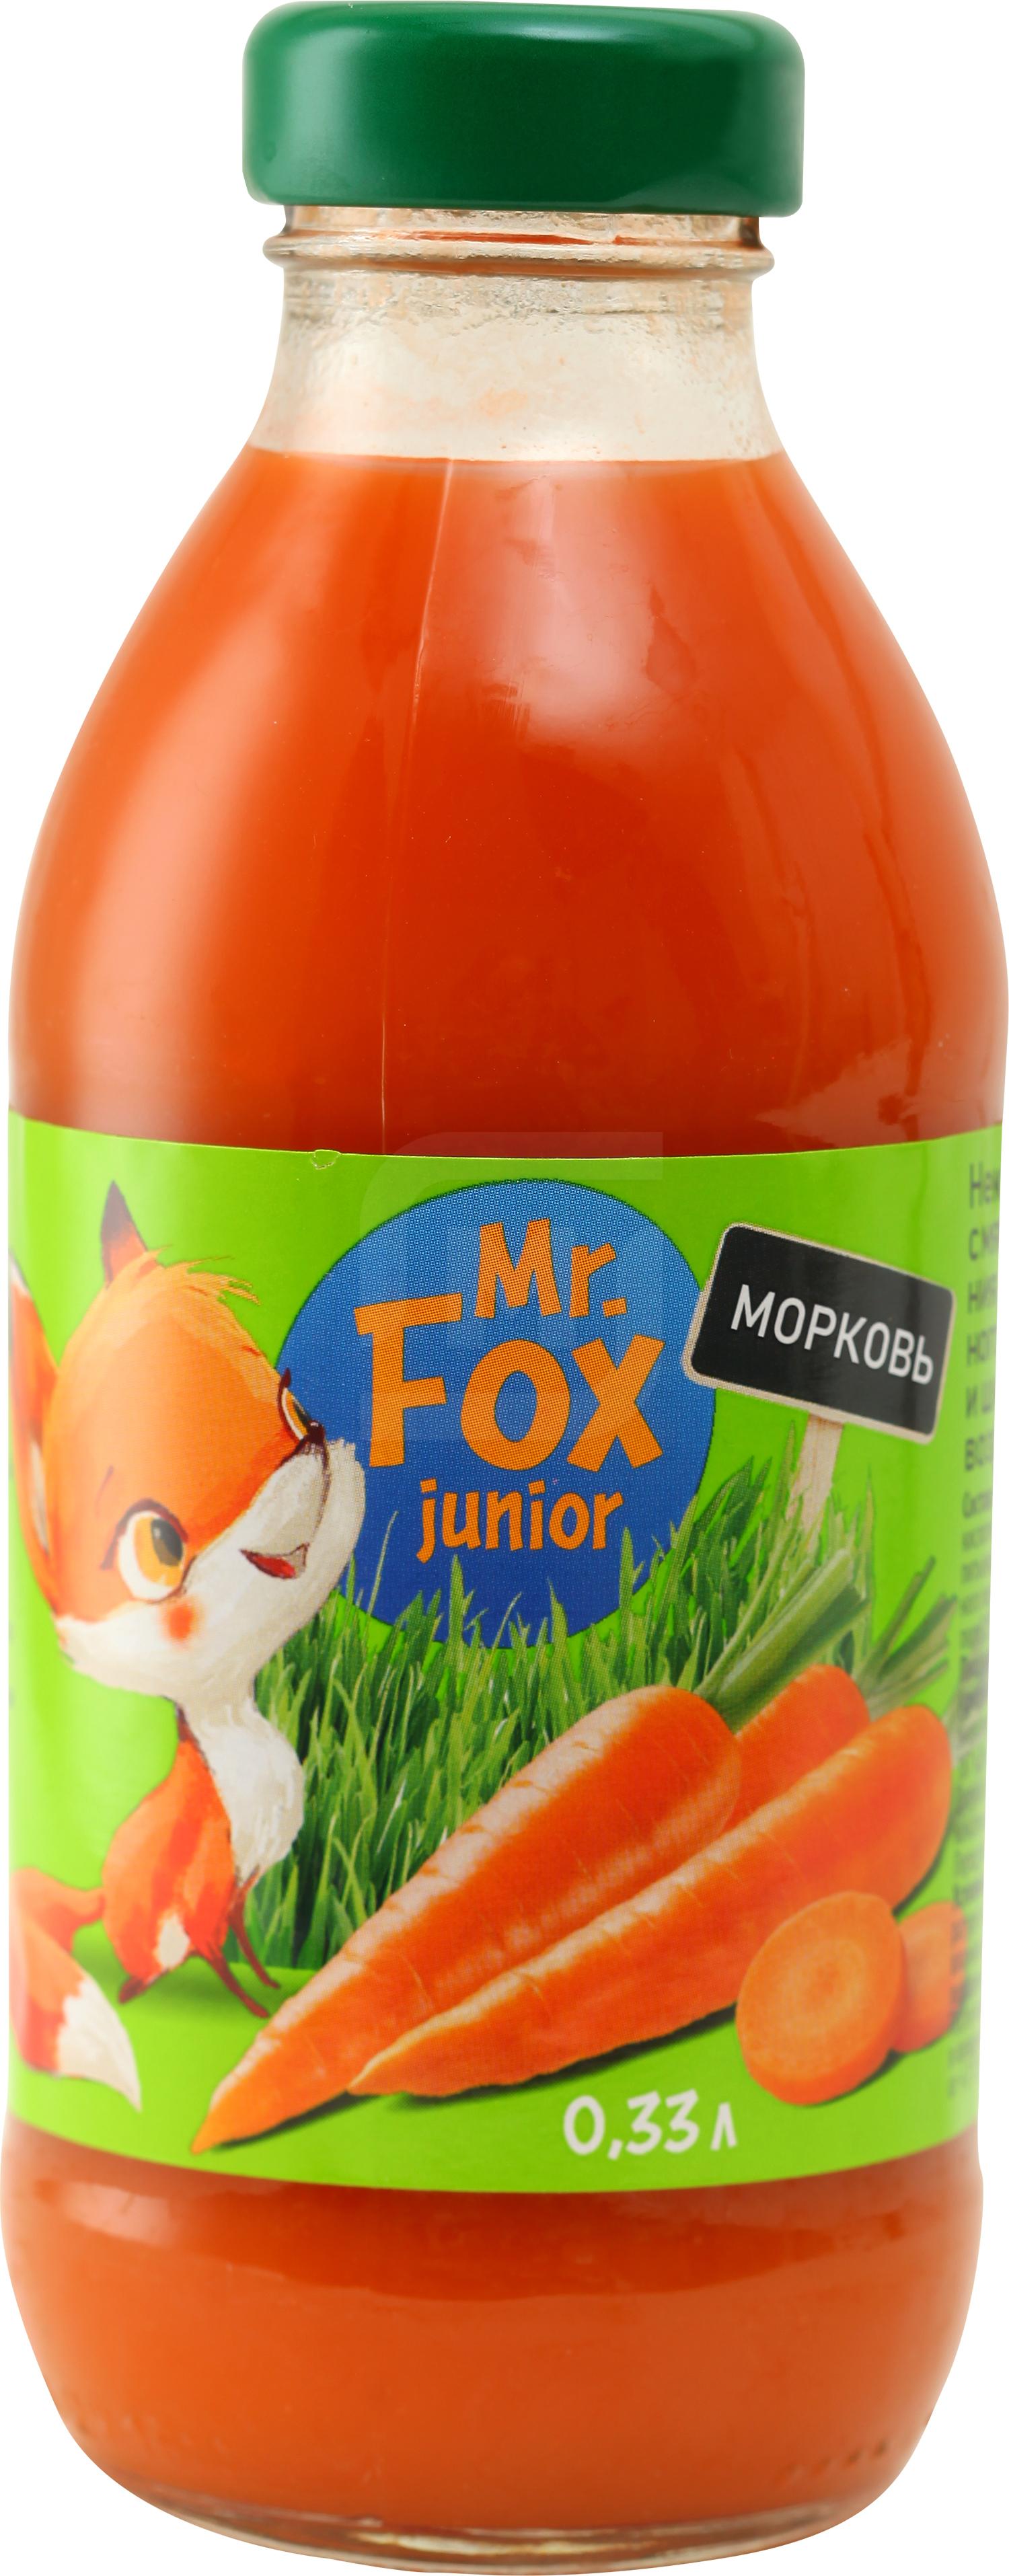 Нектар Mr. Fox морковь с мякотью